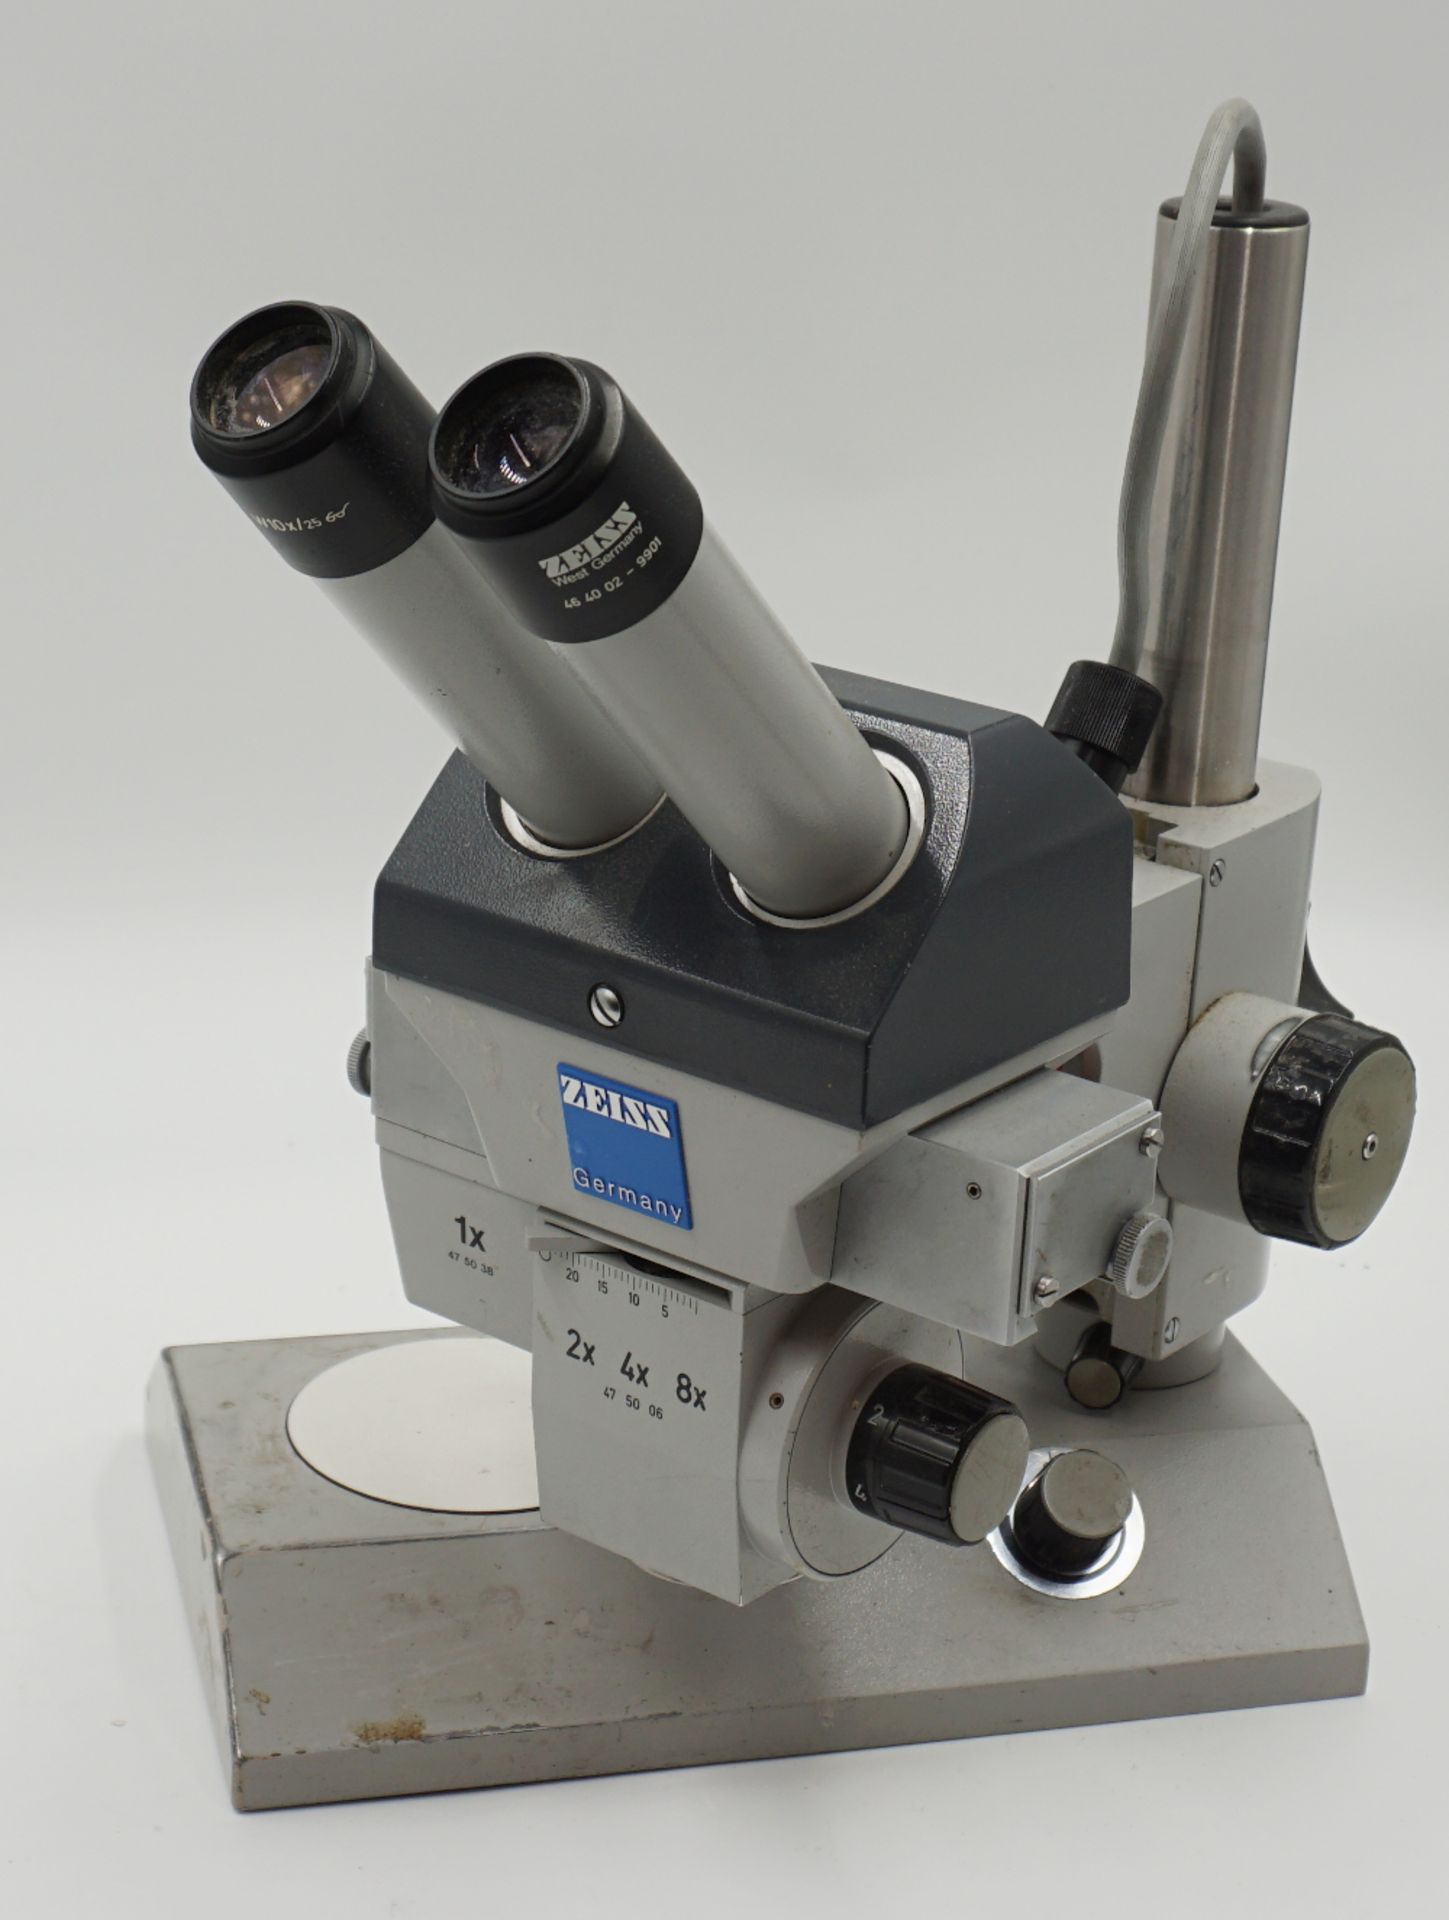 3 Mikroskope ZEISS "475110-9904", HENSOLDT, Wetzlar "48553", Ernst LEITZ, Wetzlar, je ber./Gsp.